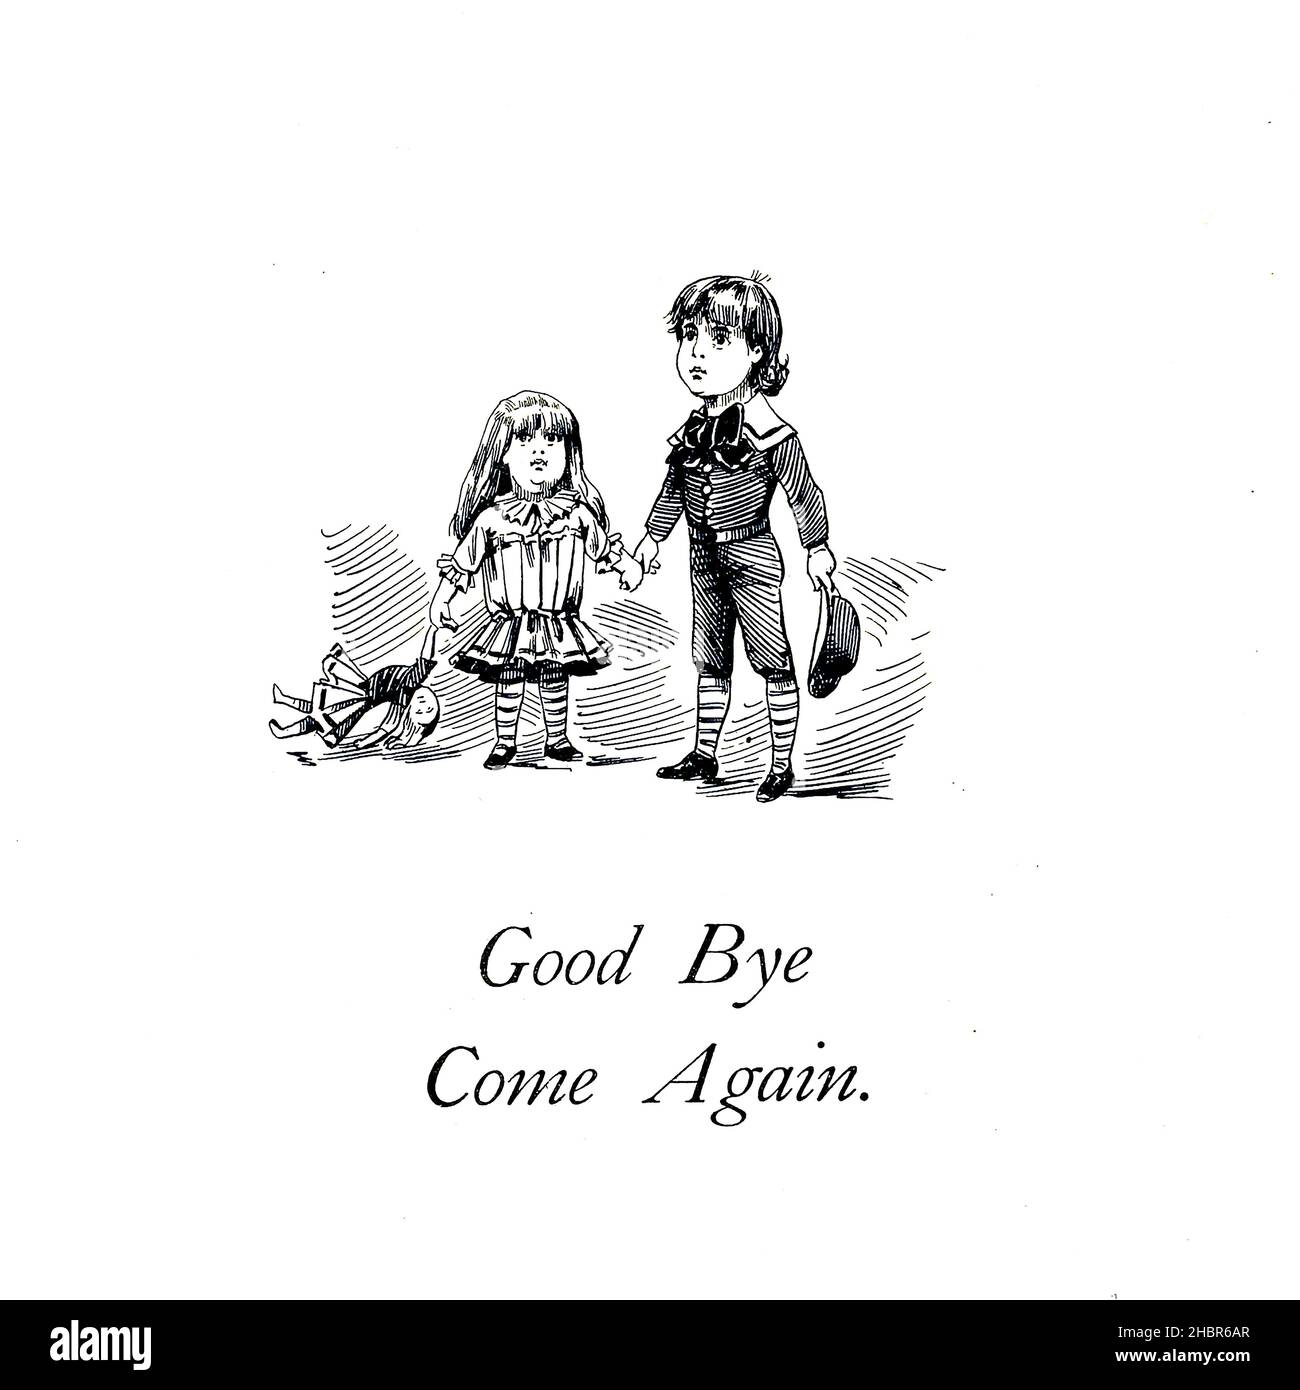 Good Bye et Come repart dernière page du livre ' Un musée des merveilles ' et ce que les jeunes ont vu là, expliqué dans de nombreuses images par Frederick Burr Opper, publié à Londres ; New York par George Routledge & Sons en 1894 Banque D'Images